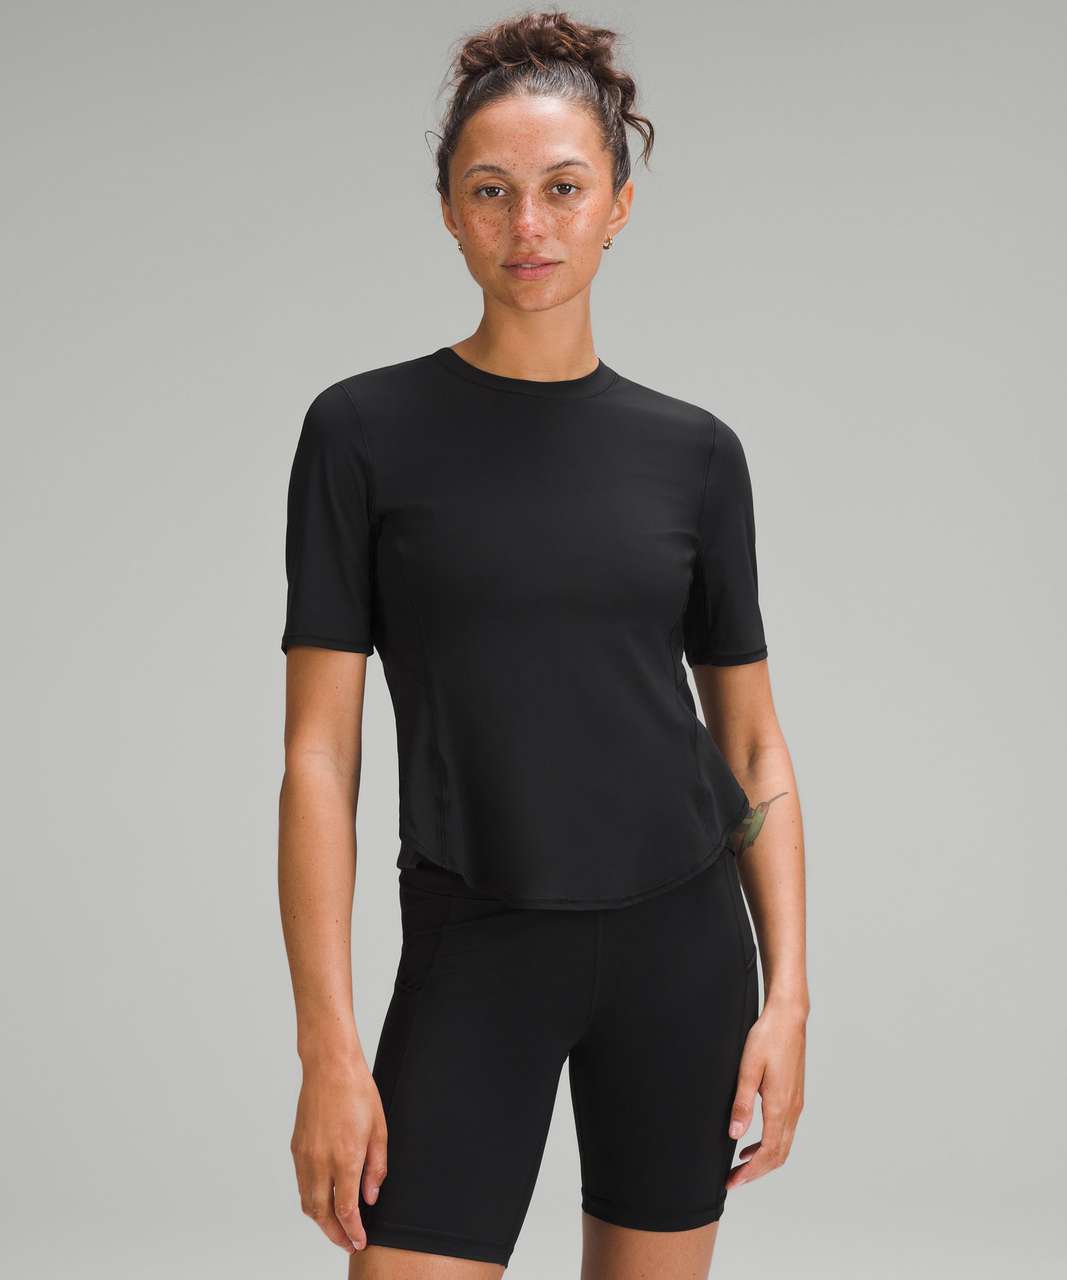 Lululemon UV Protection Fold-Over Running T-Shirt - Black